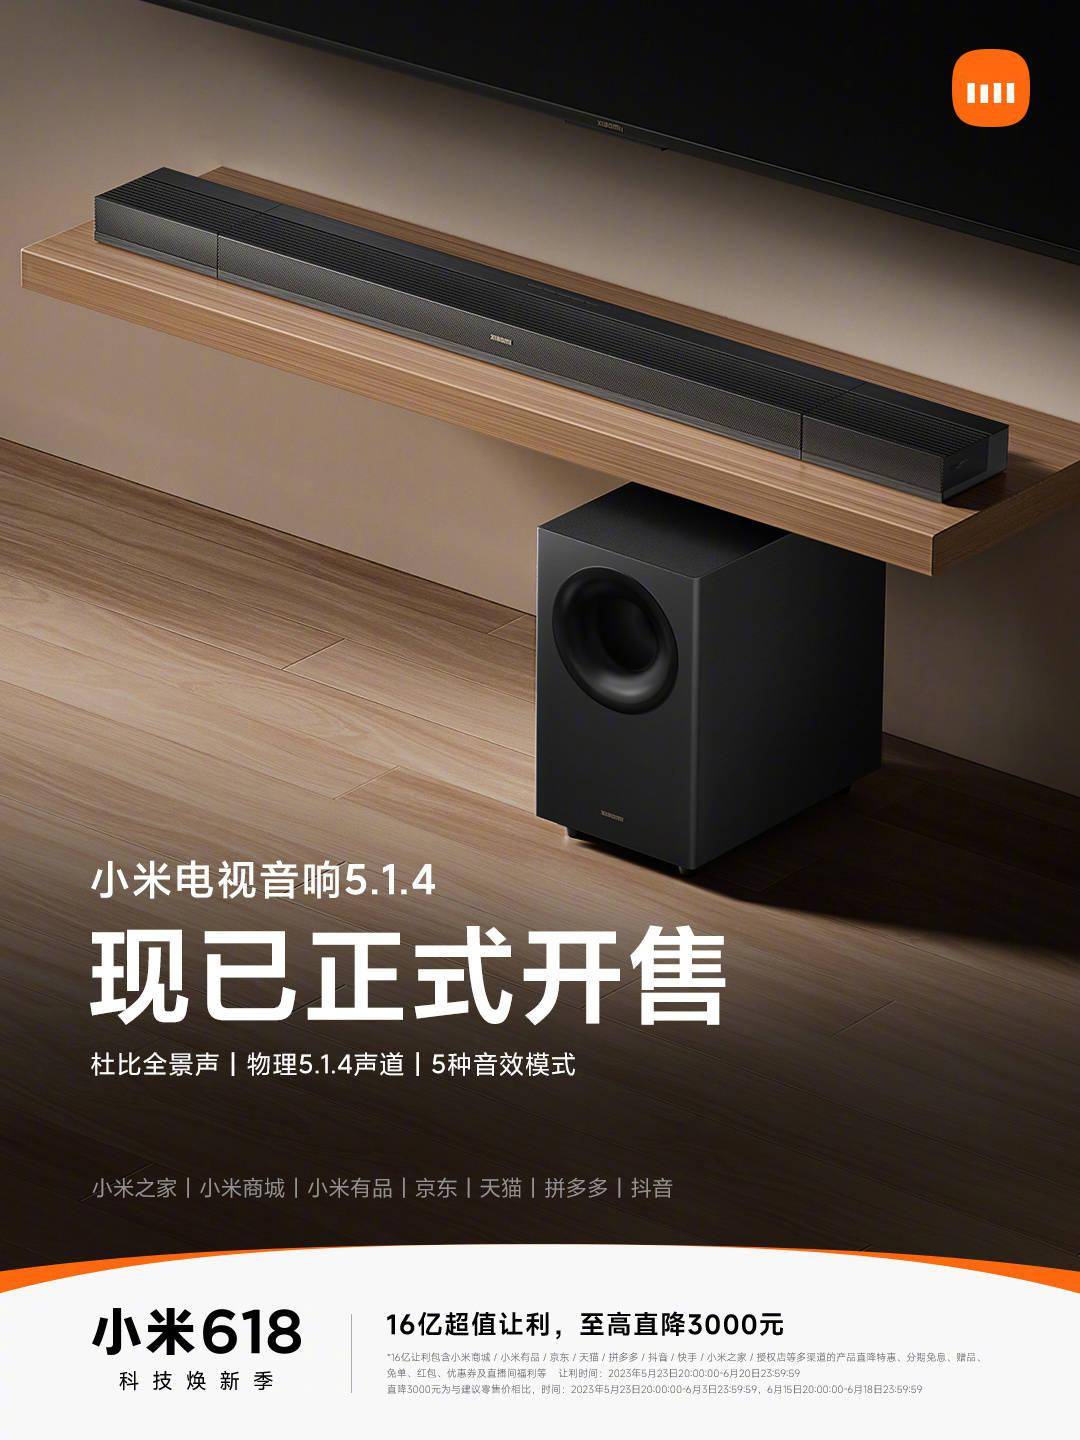 小米电视音响5.1.4开卖 小米目前推出的最高配置型号